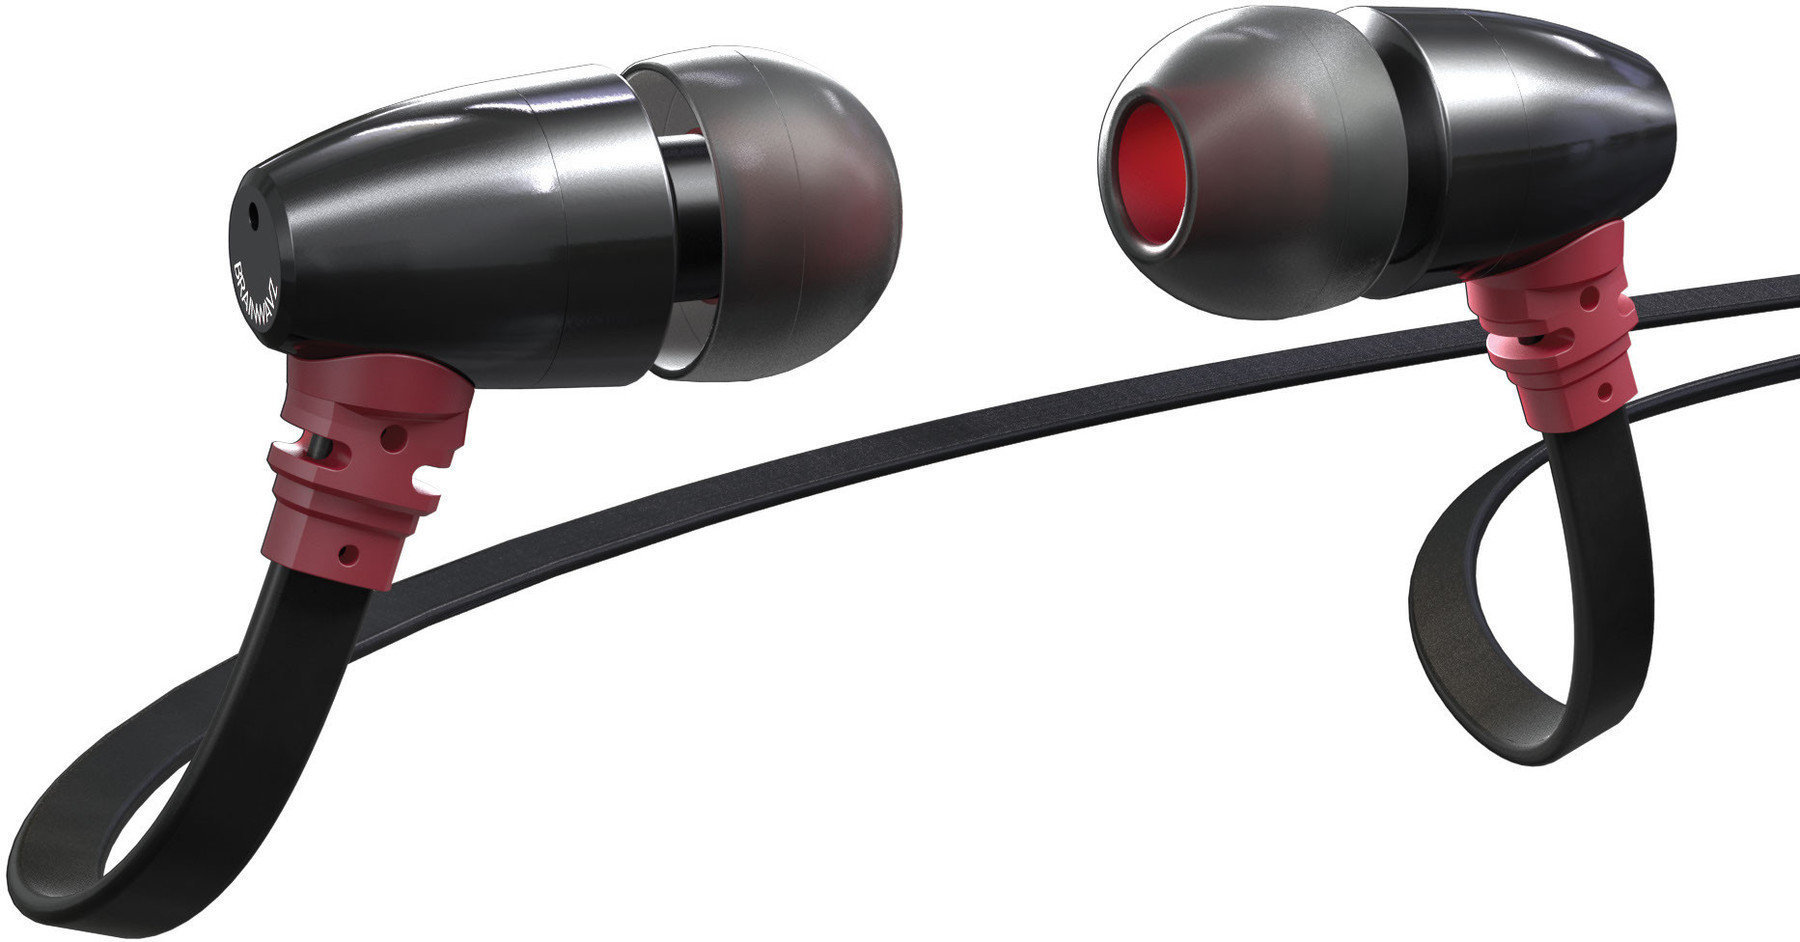 In-Ear Headphones Brainwavz S0 ZERO In-Ear Earphone Headset Black-Red